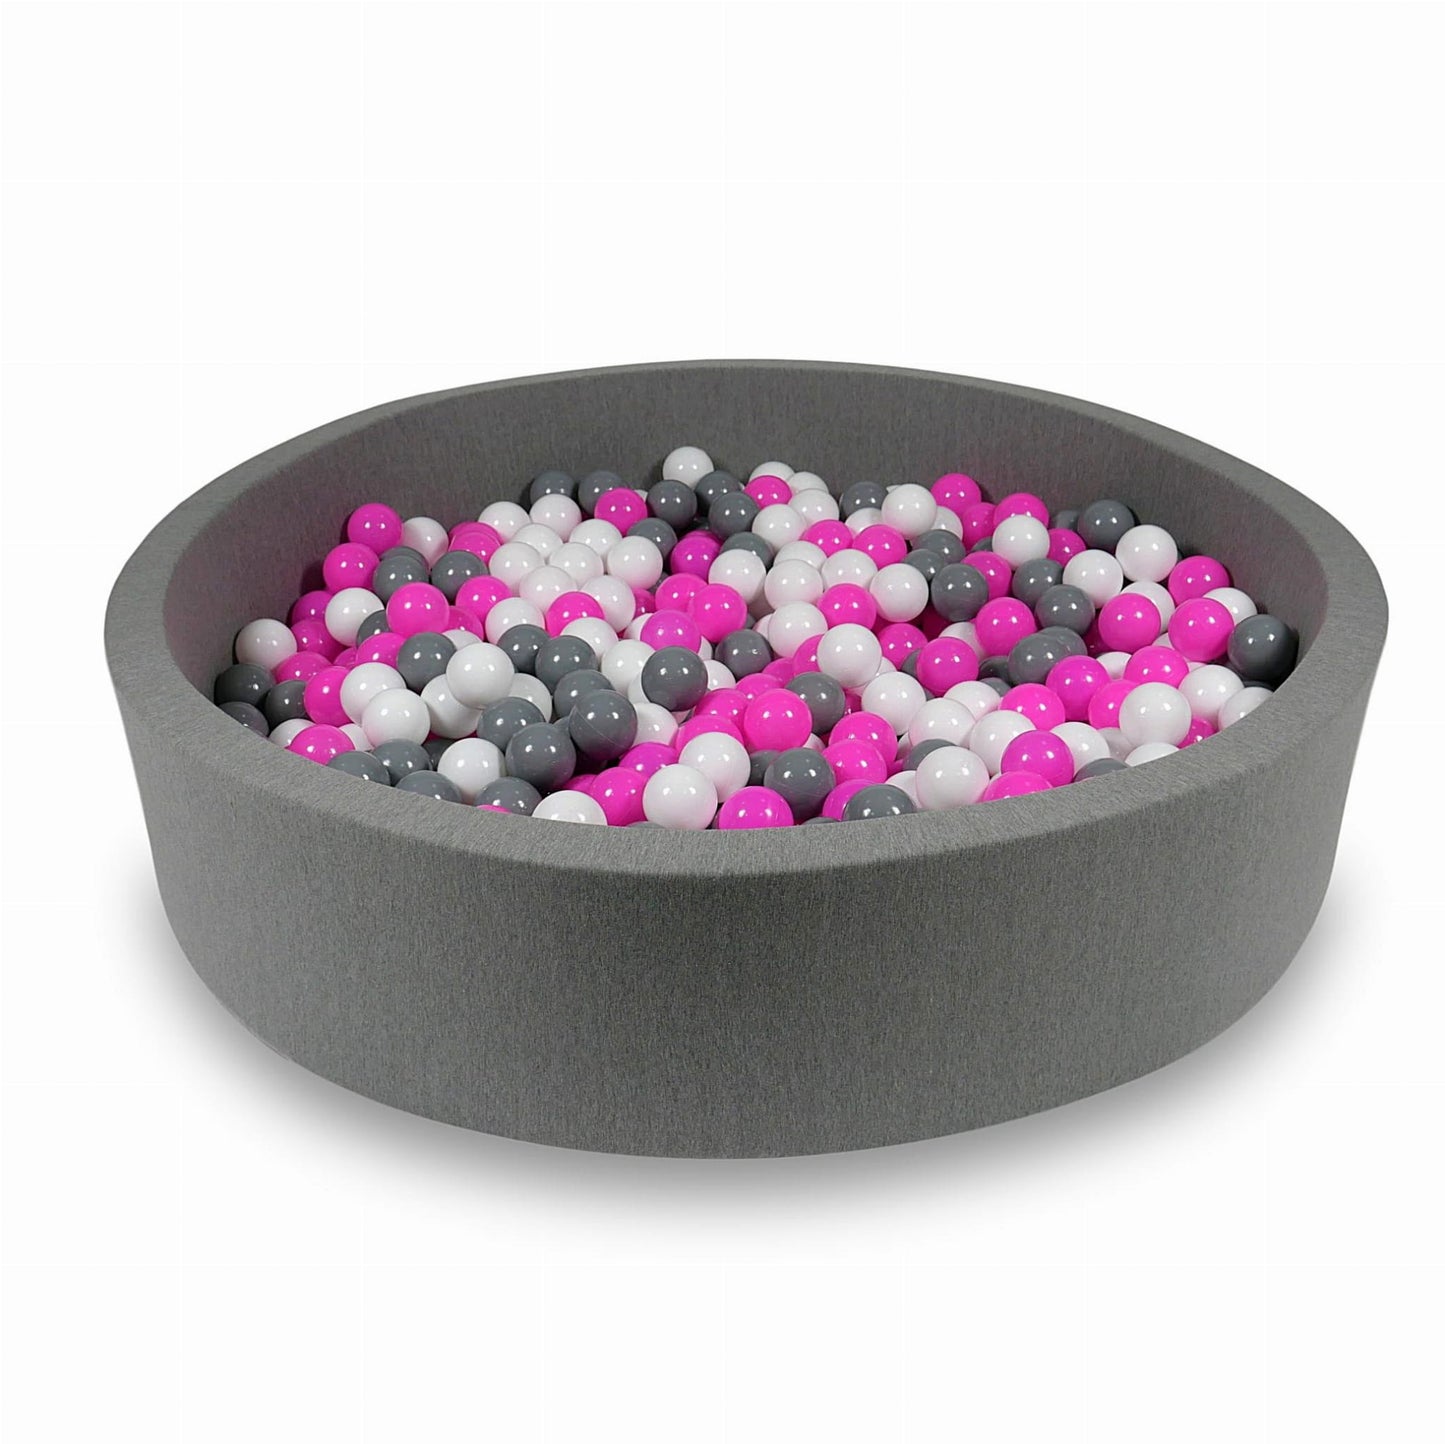 Piscine à Balles 130x30cm grise avec balles 600pcs (blanc, gris, rose)